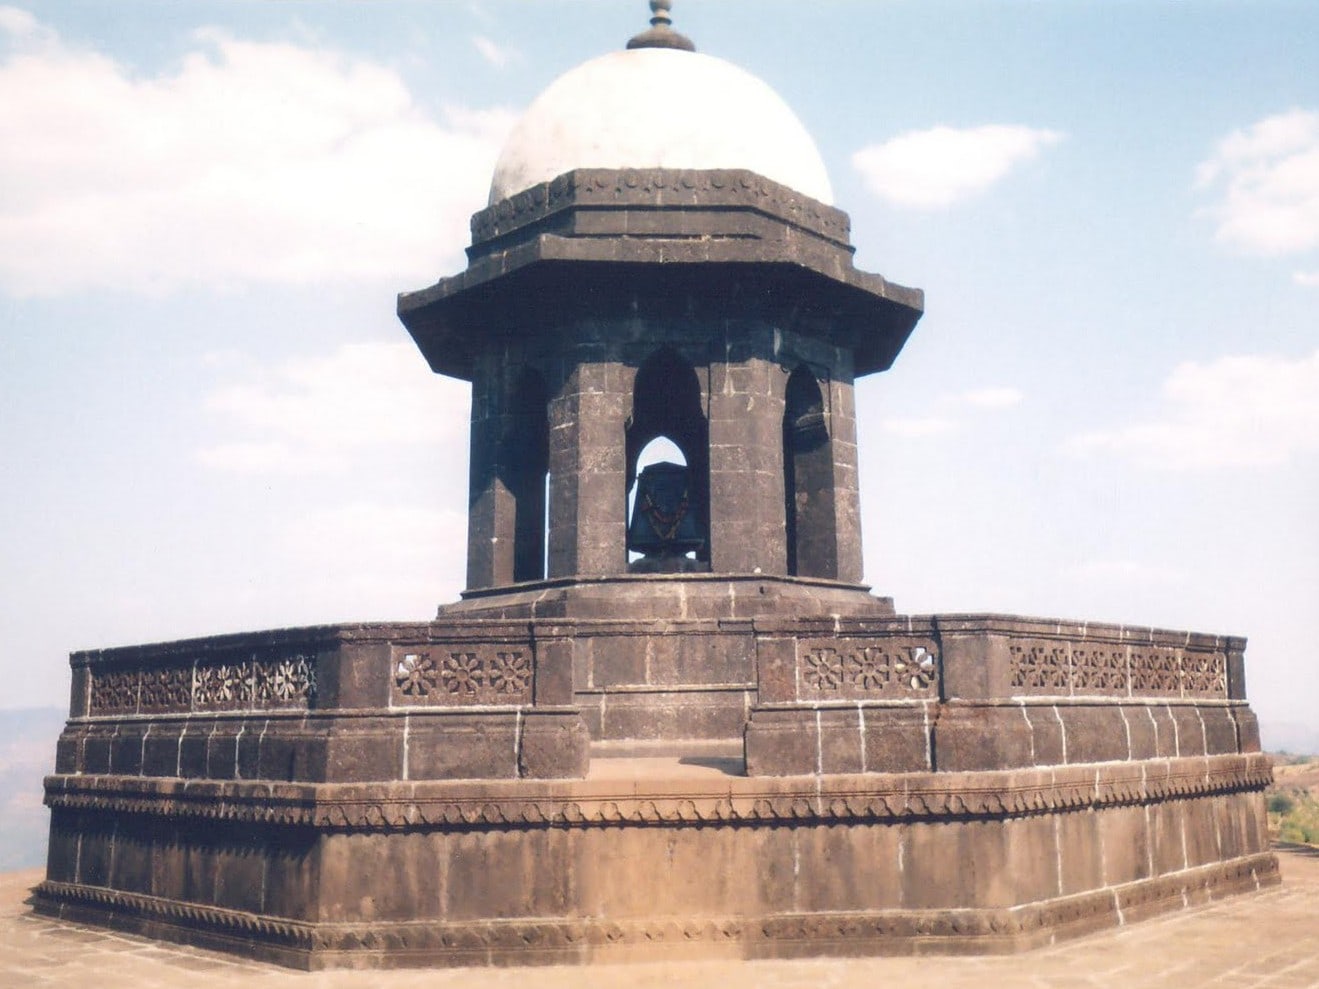 Chhatrapati Shivaji Maharaj Tomb